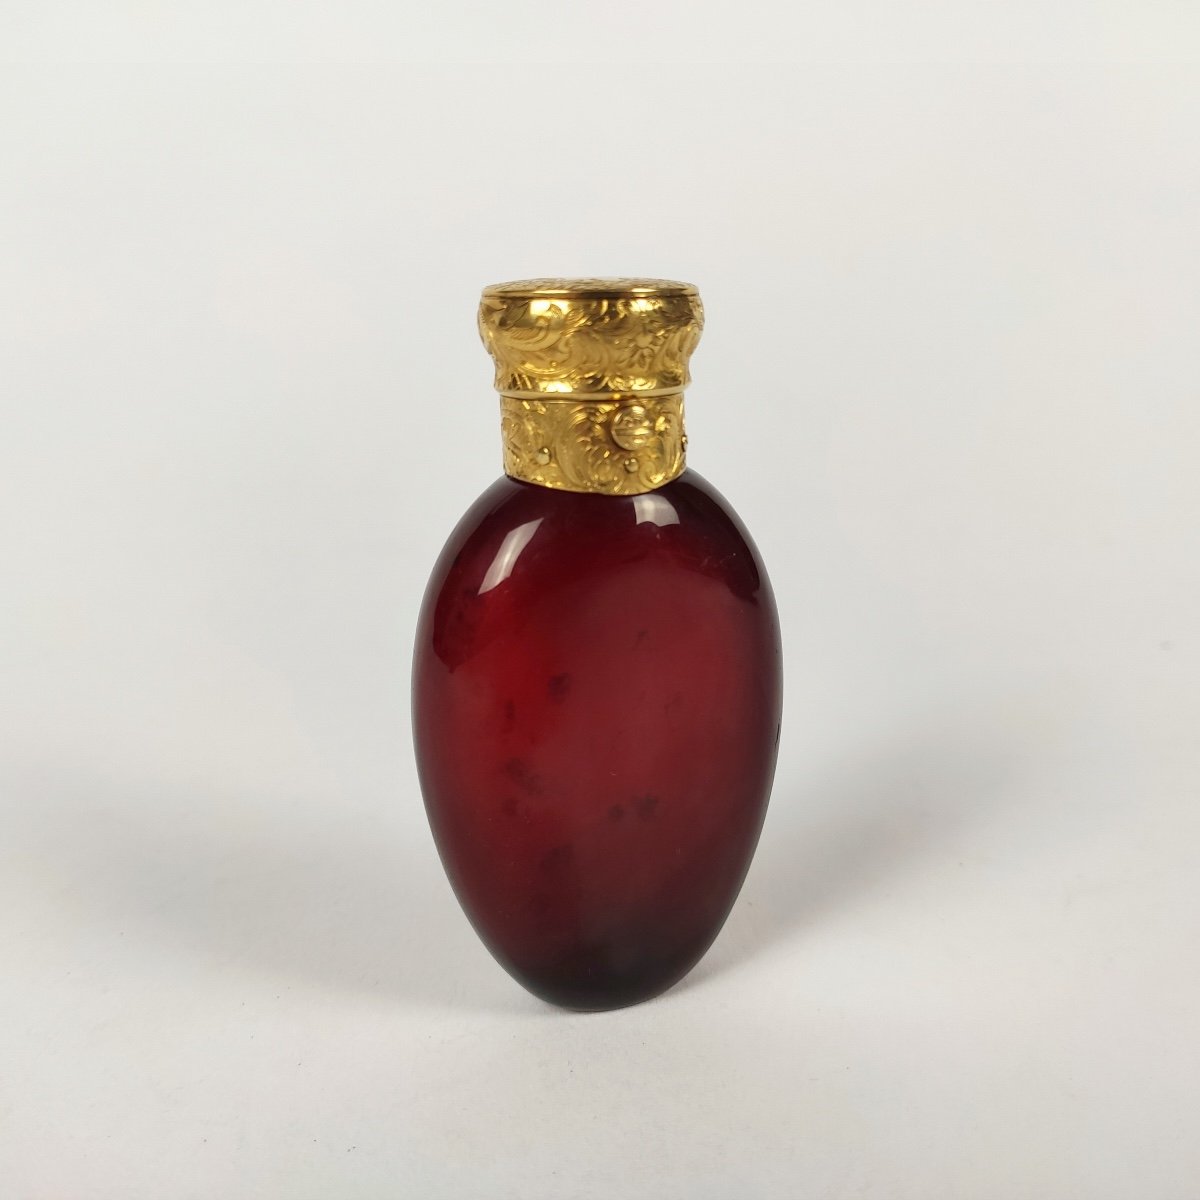 Magnifique Flacon à Sel / parfum En Verre Rouge Et Large Monture En Or Gravée De Rinceaux. 